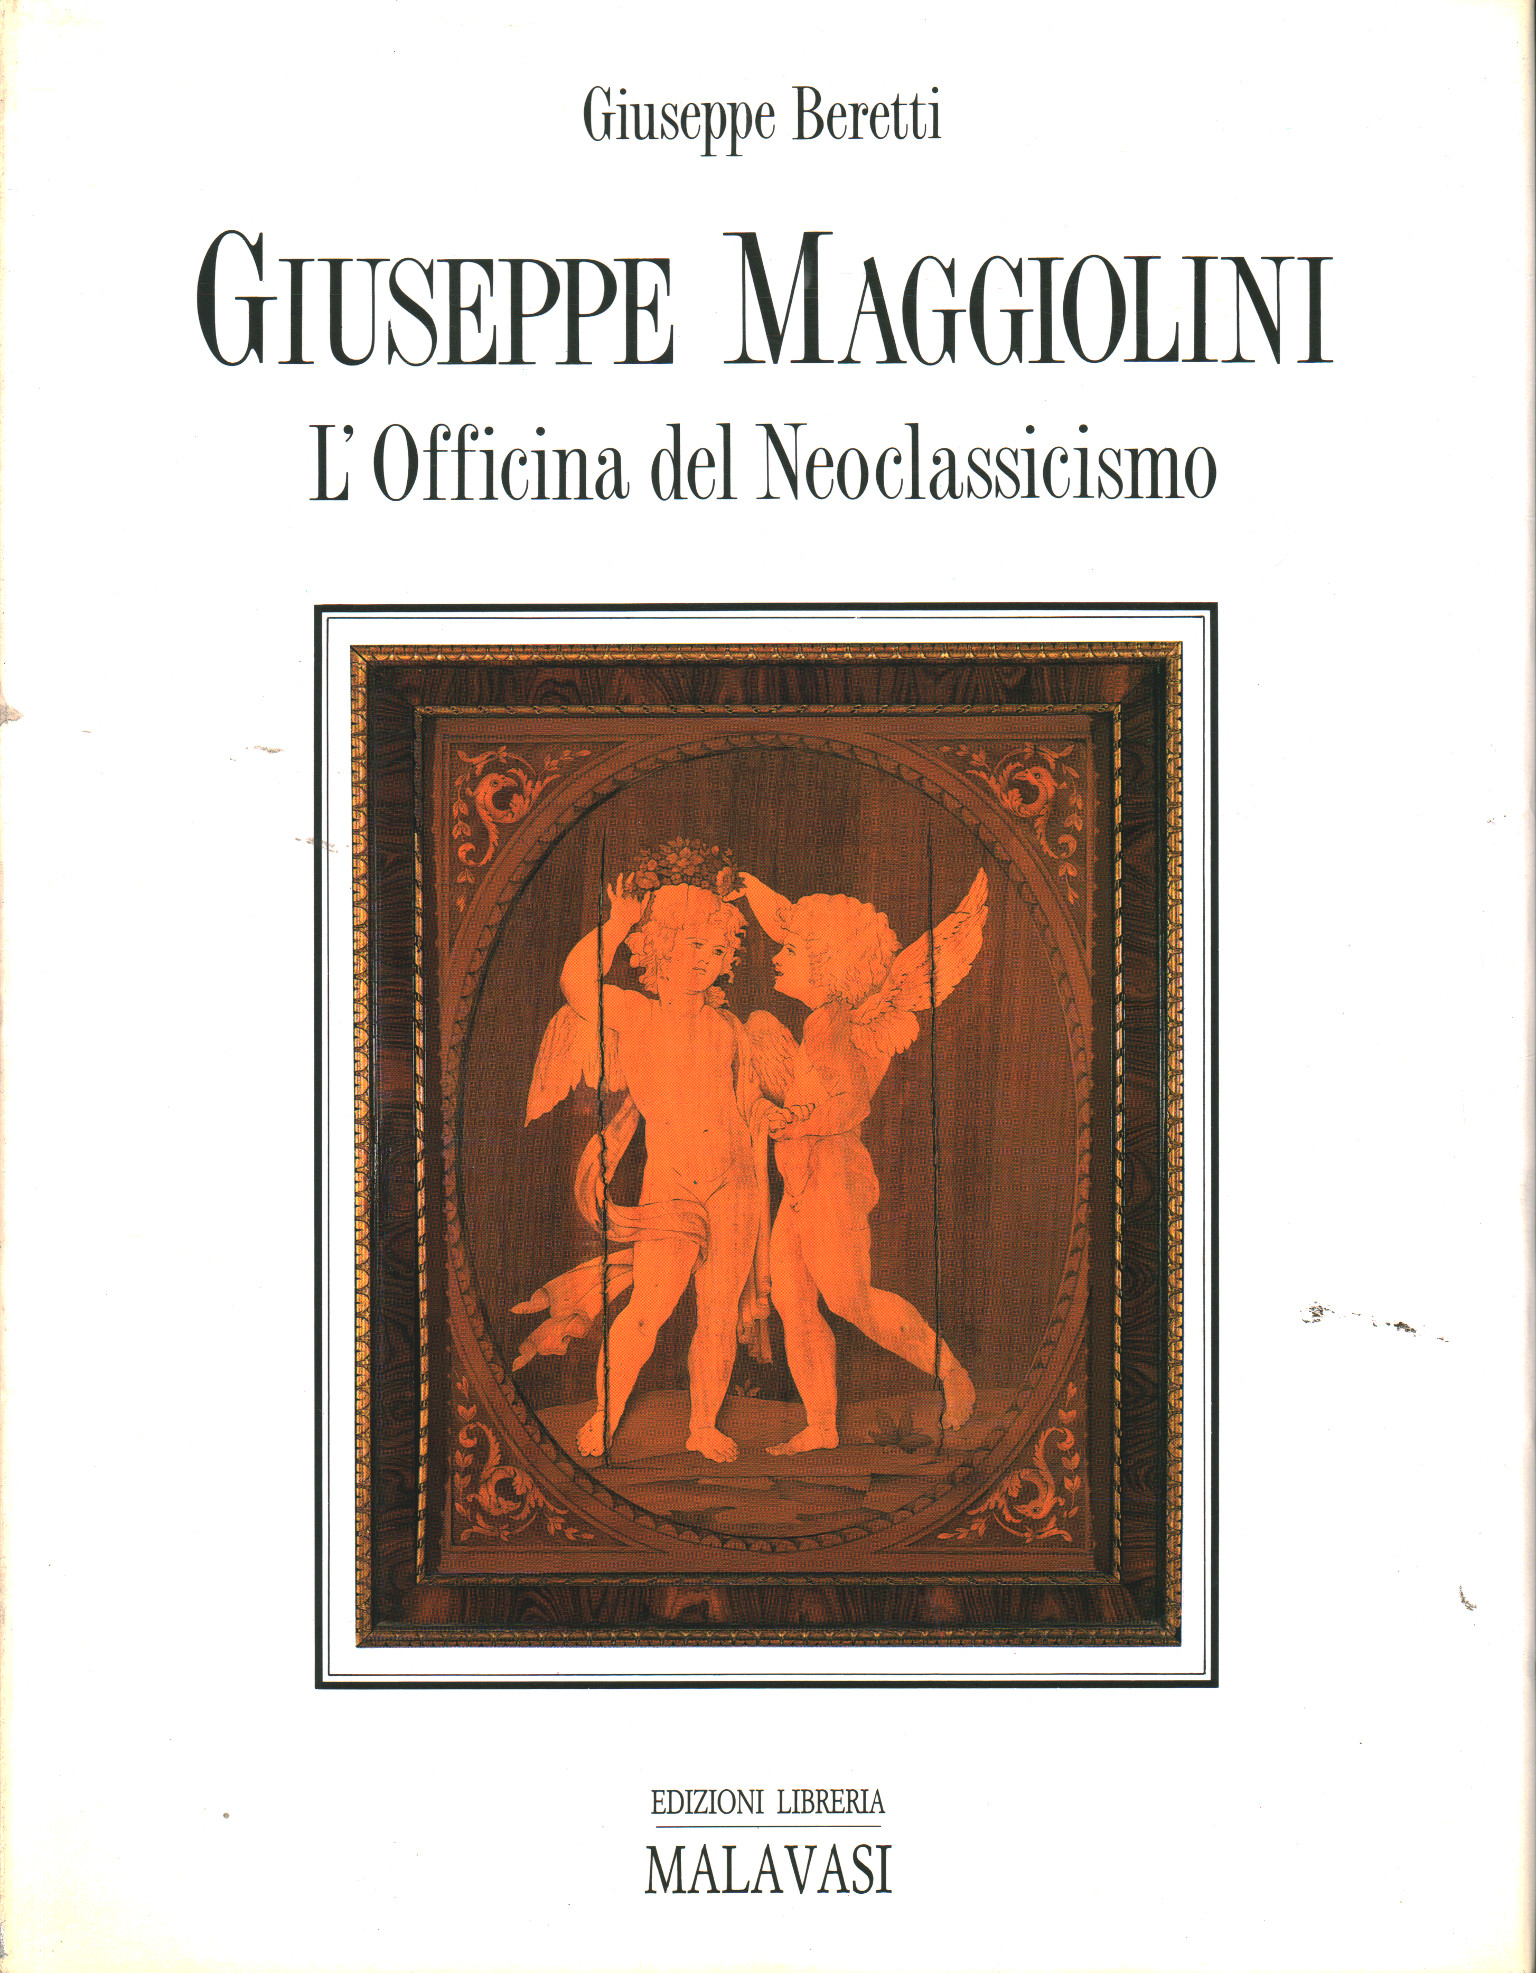 Giuseppe y Carlo Francesco Maggiolini, Giuseppe Beretti